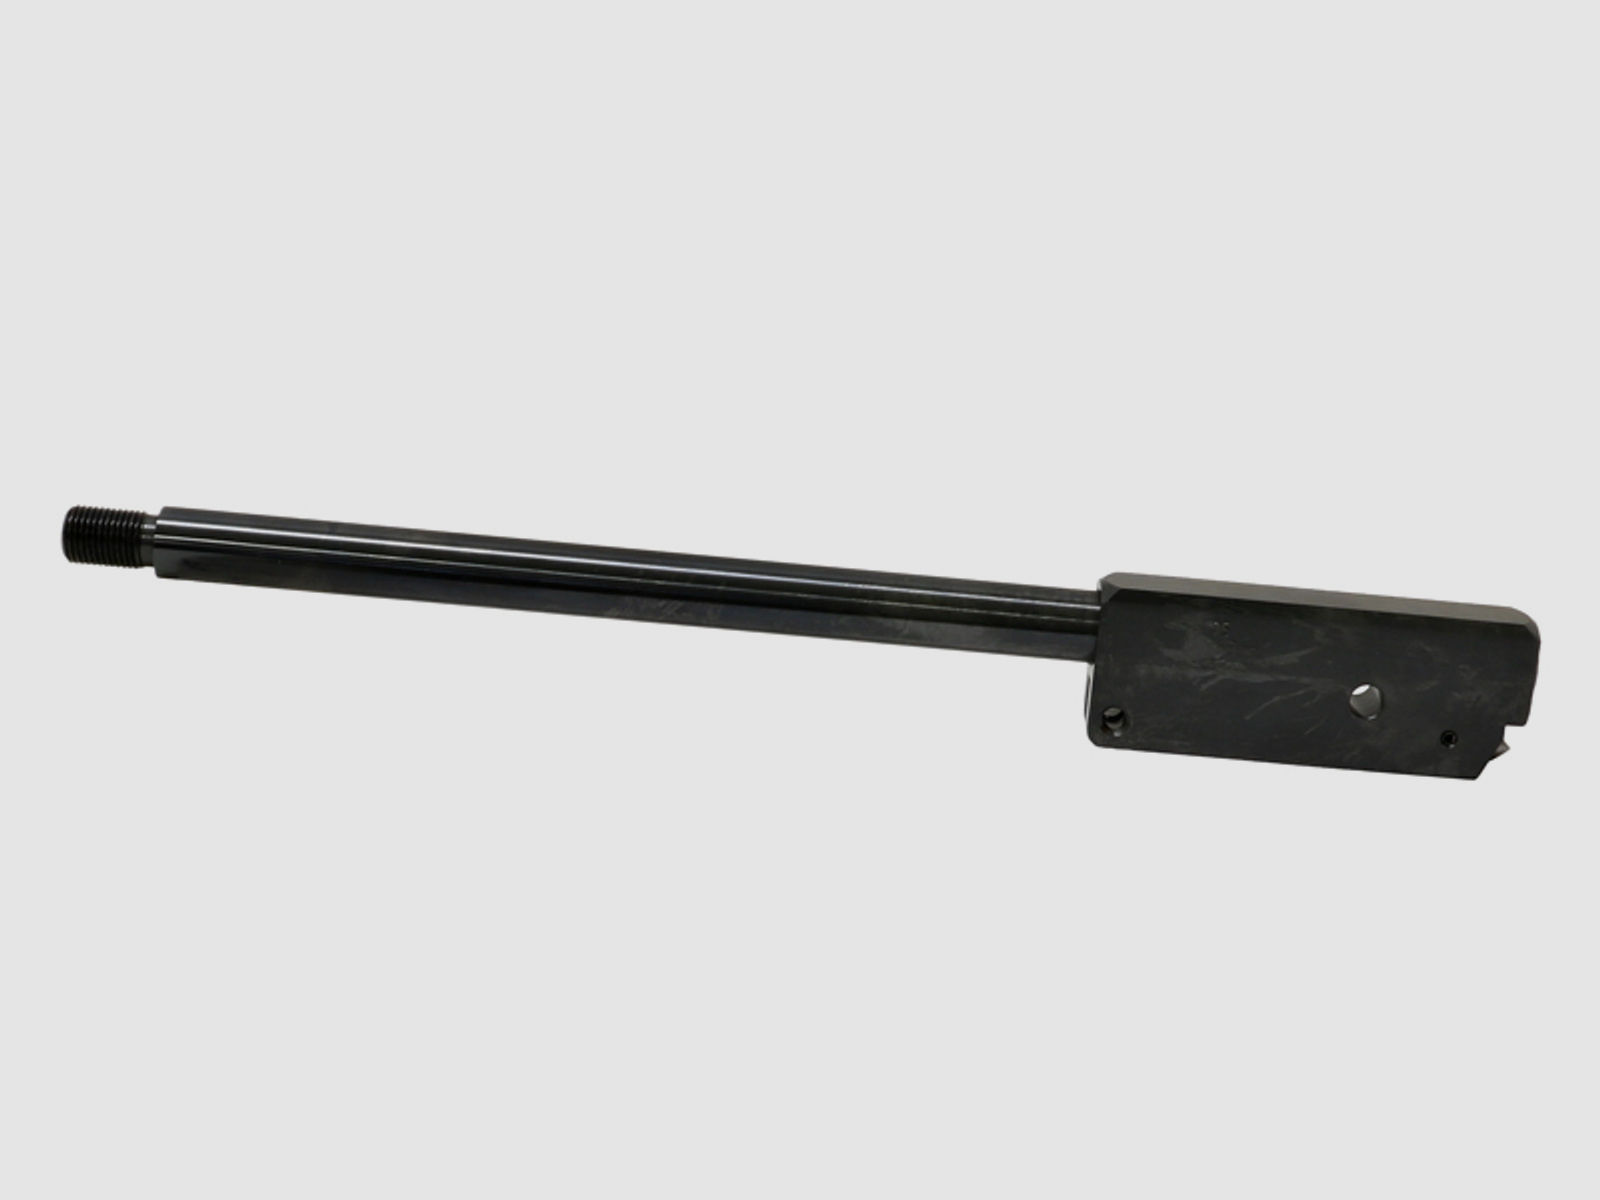 Wechsellauf mit SchalldĂ¤mpfergewinde fĂĽr Luftgewehr Weihrauch HW 95 LĂ¤nge 310 mm Kaliber 5,0 mm (P18)